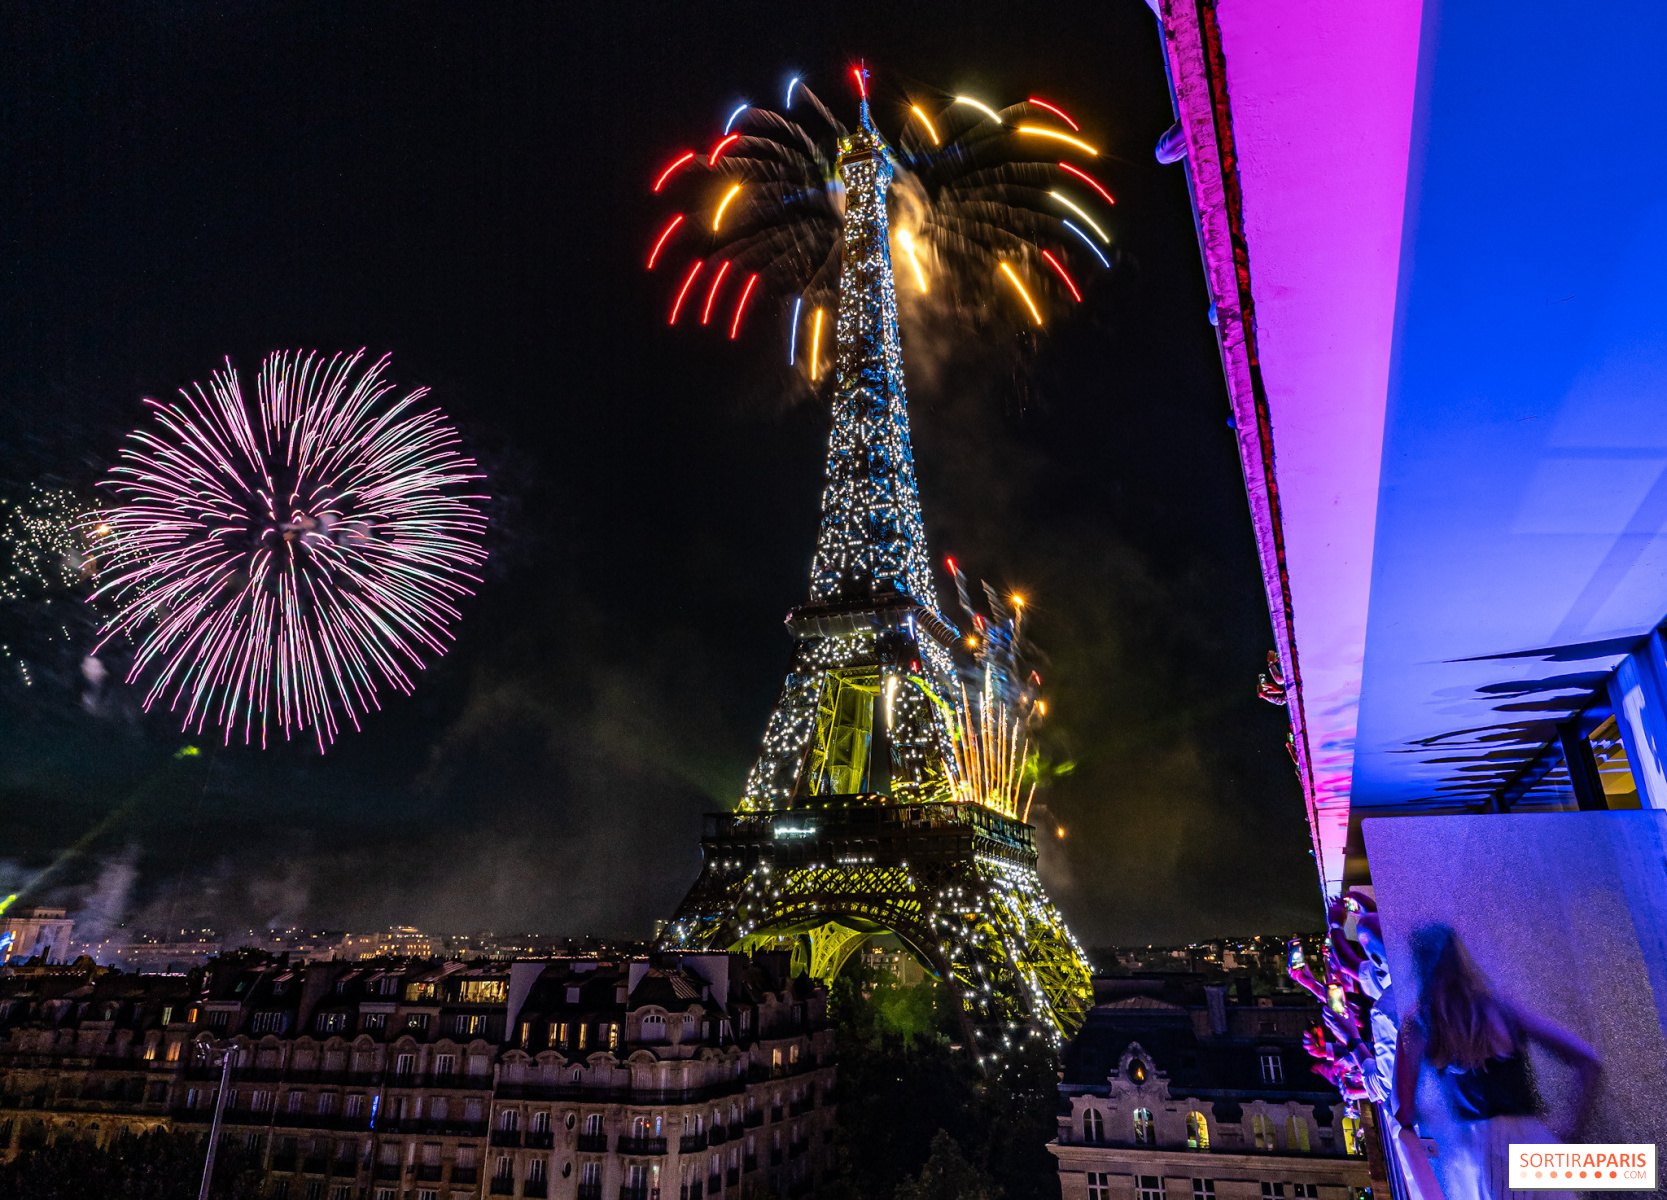 Feu d'artifice du 14 juillet à Paris 2023 - La Tour Eiffel - Paris, 75007 -  Sortir à Paris